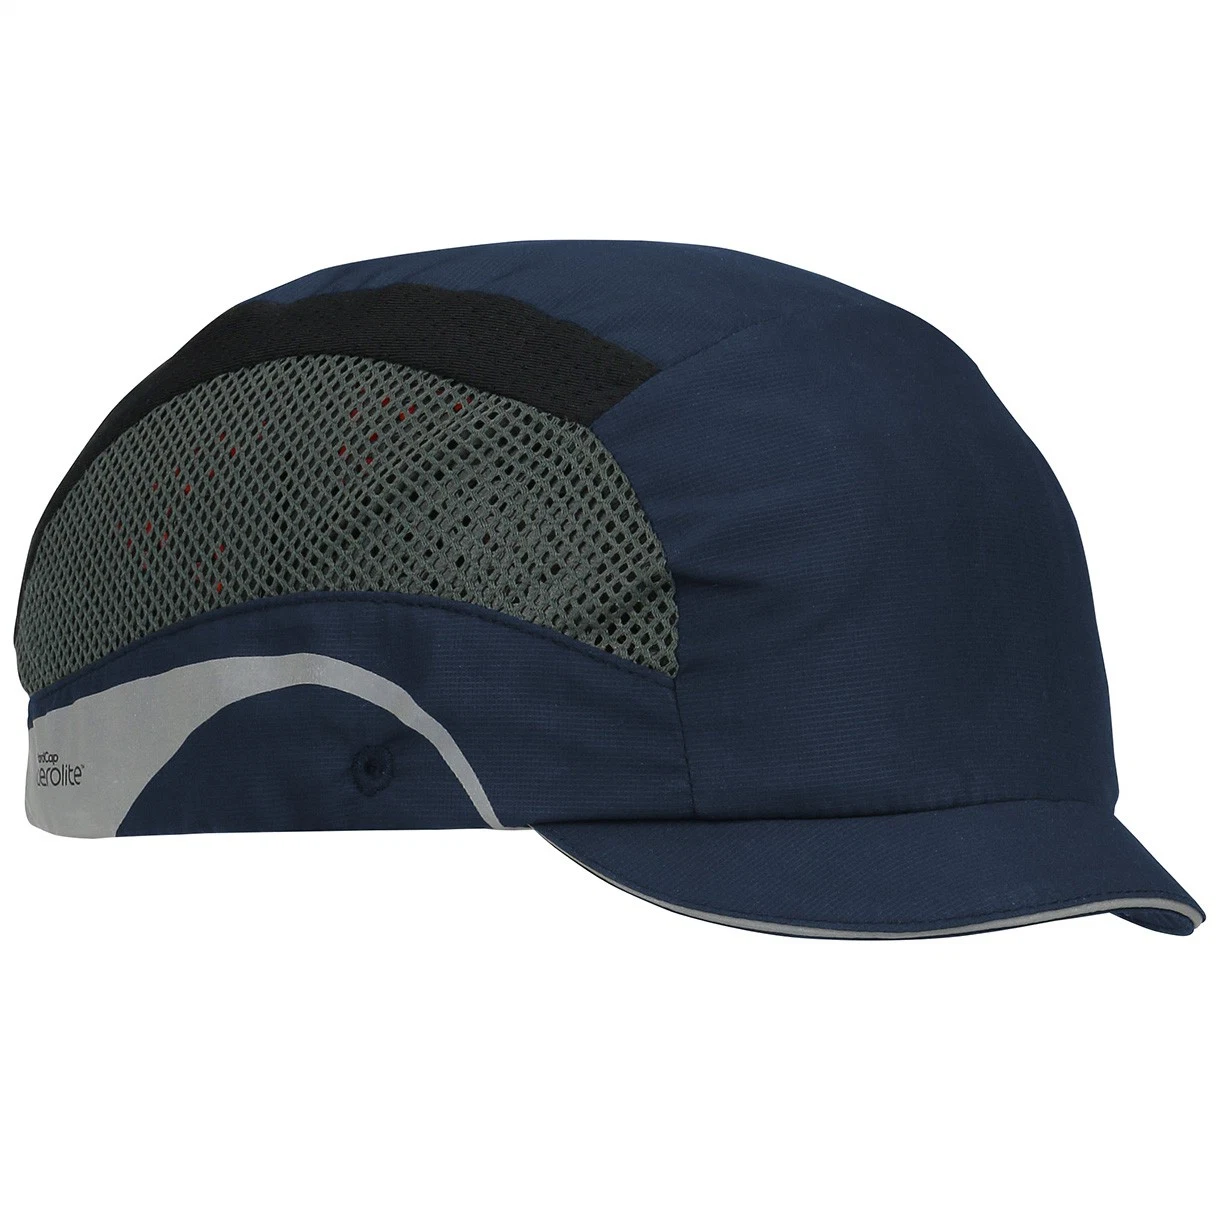 Professional Capacete Industrial Material ABS Oficina Chapéus de Beisebol Azul Escuro Trabalho Tampas de Solavanco